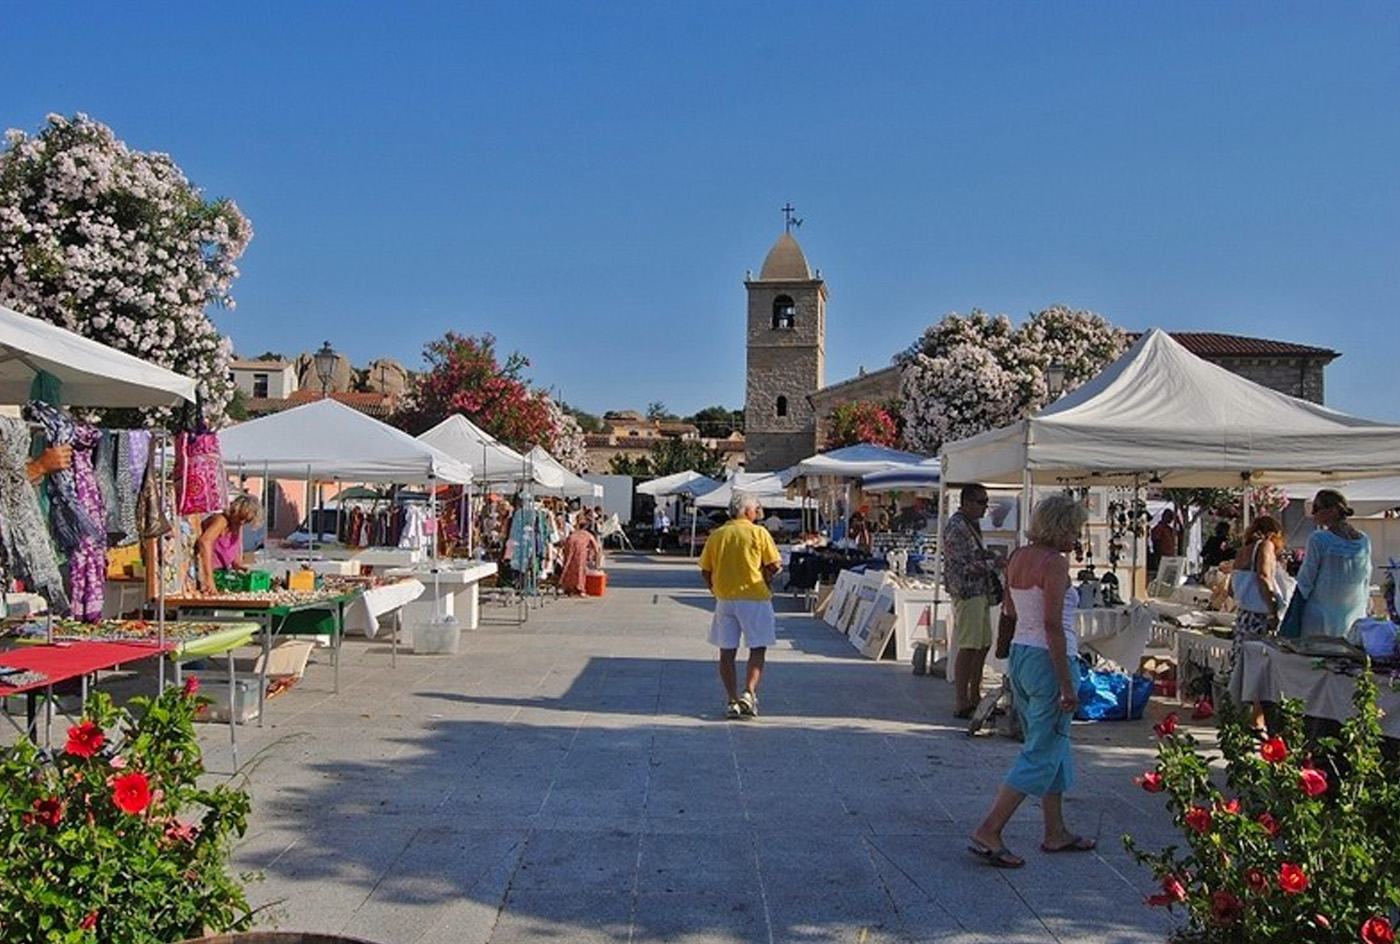 Il mercatino della spiaggia 